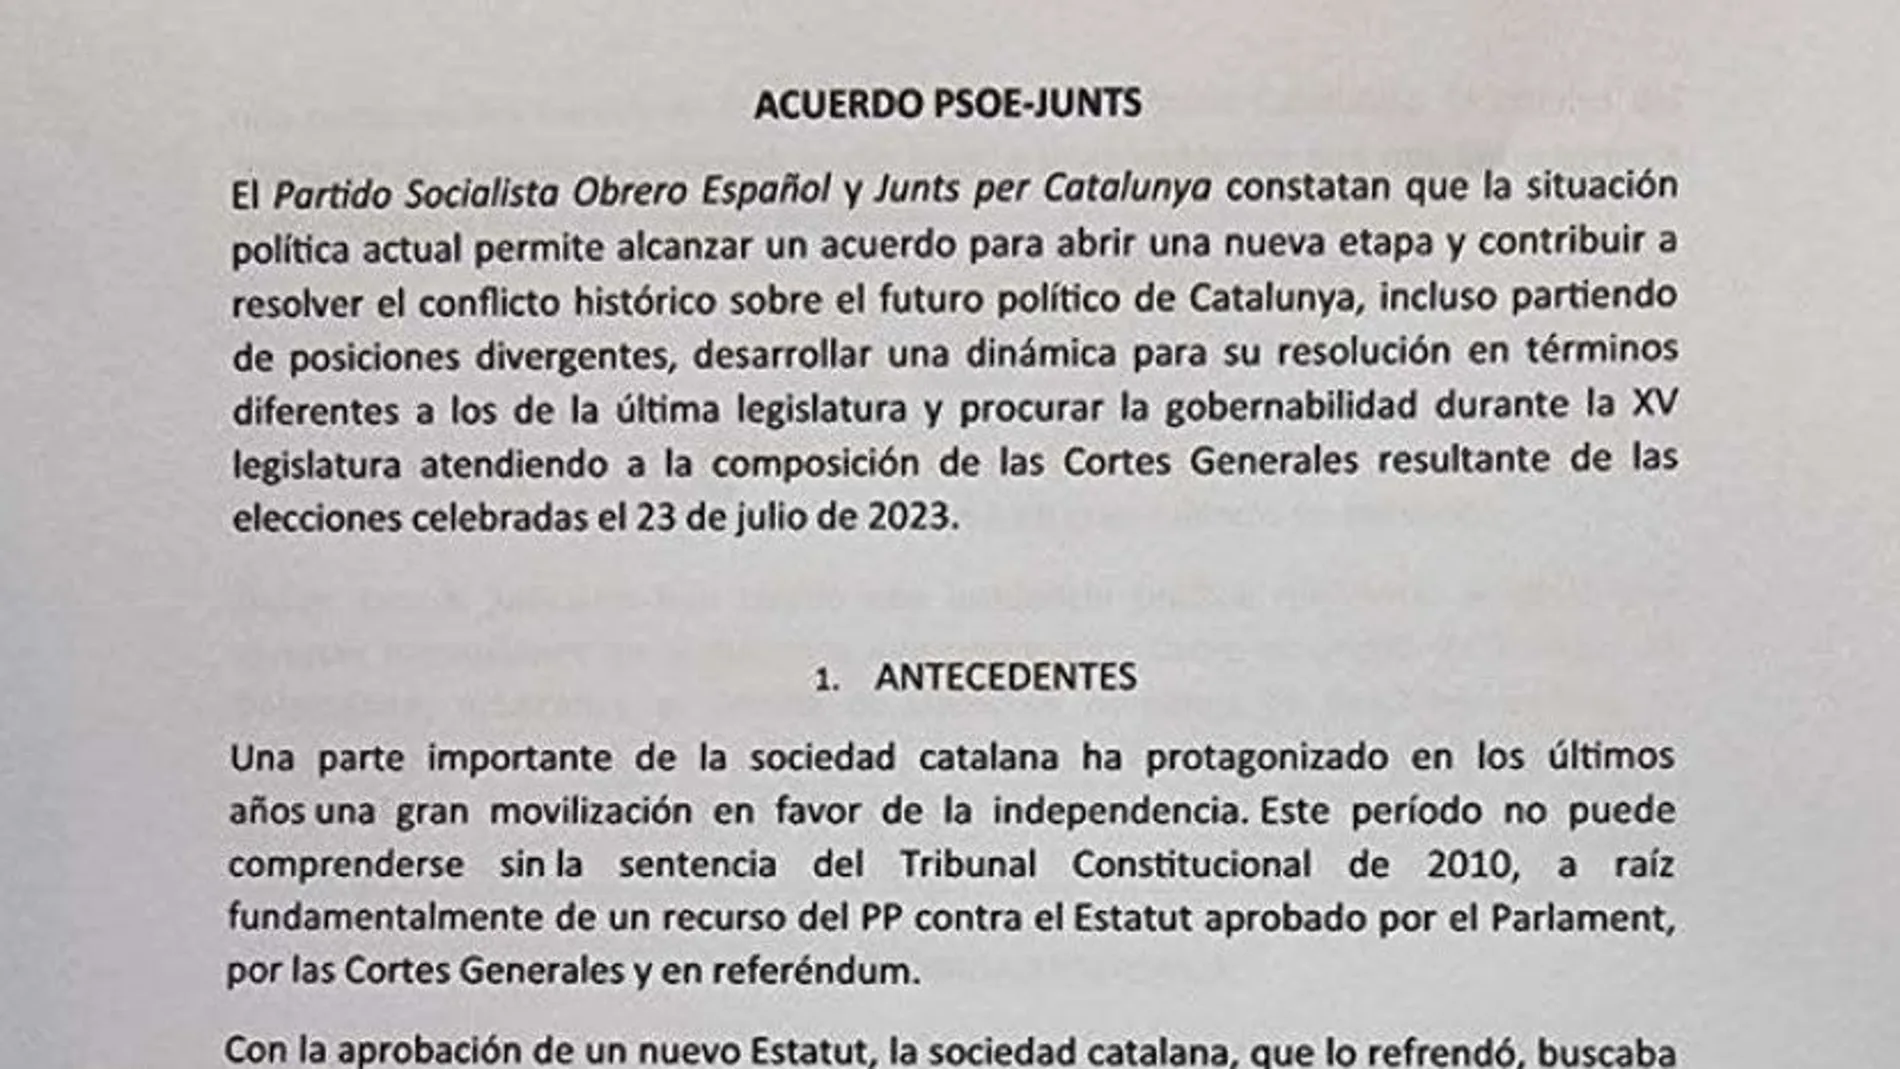 Fragmento del documento del acuerdo PSOE -Junts para la investidura de Pedro Sánchez